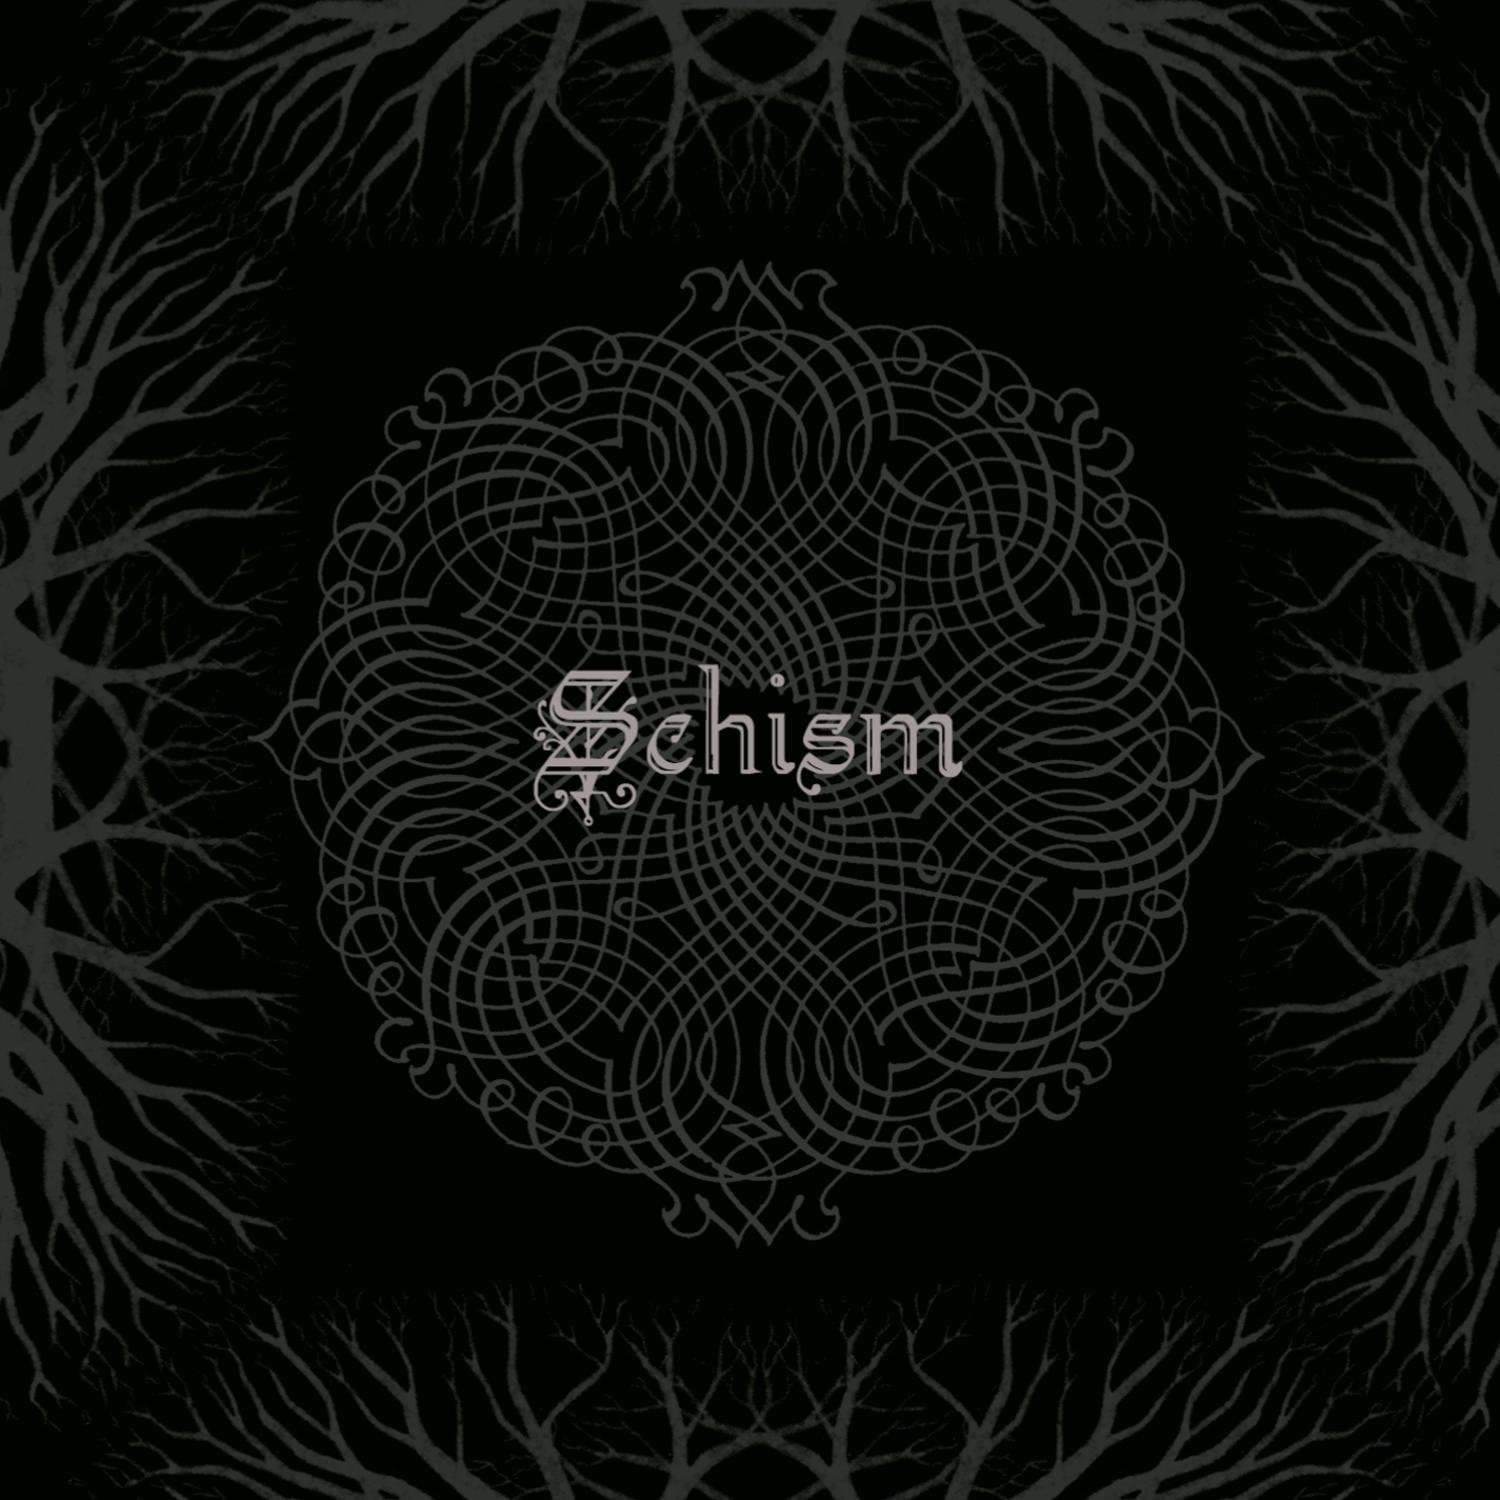 Schism